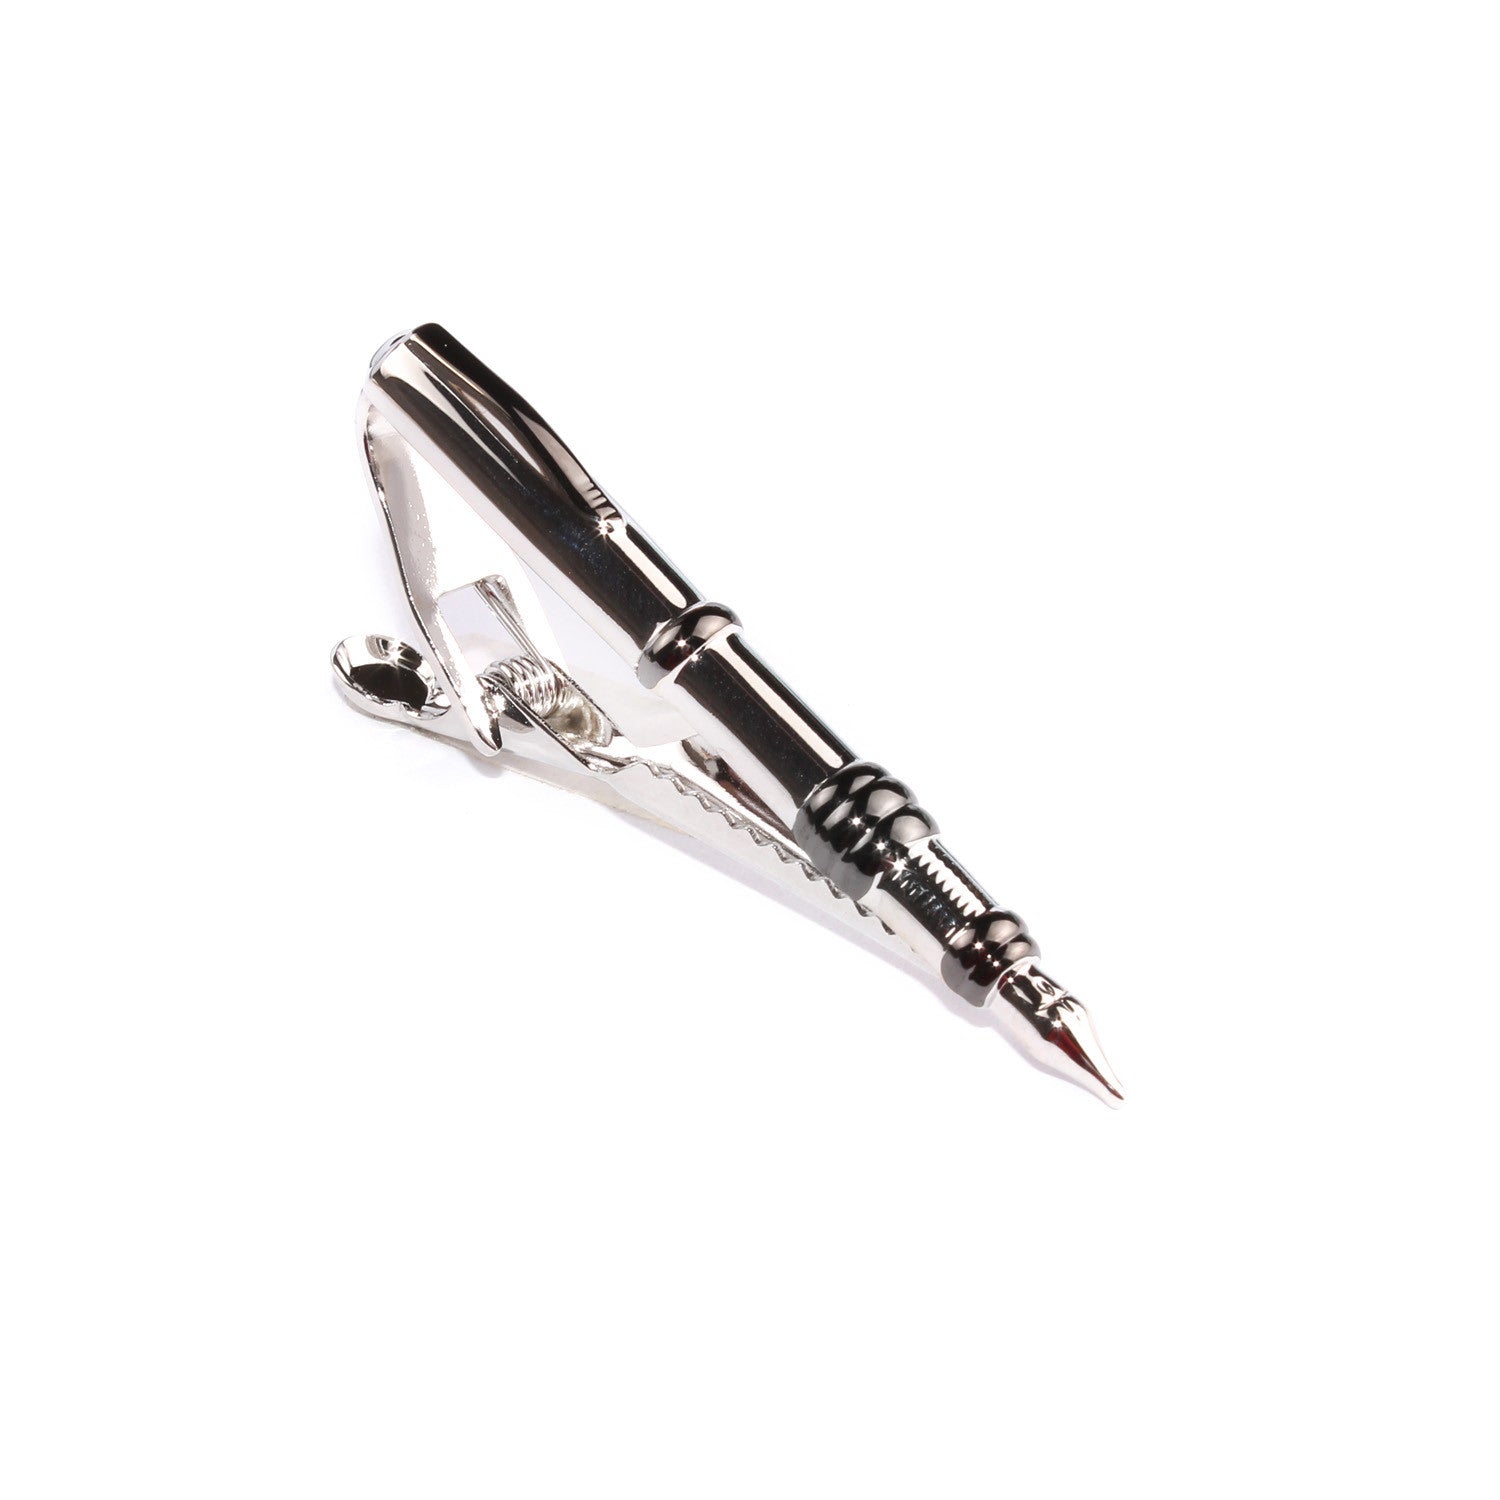 The Silver Fountain Pen Tie Bar